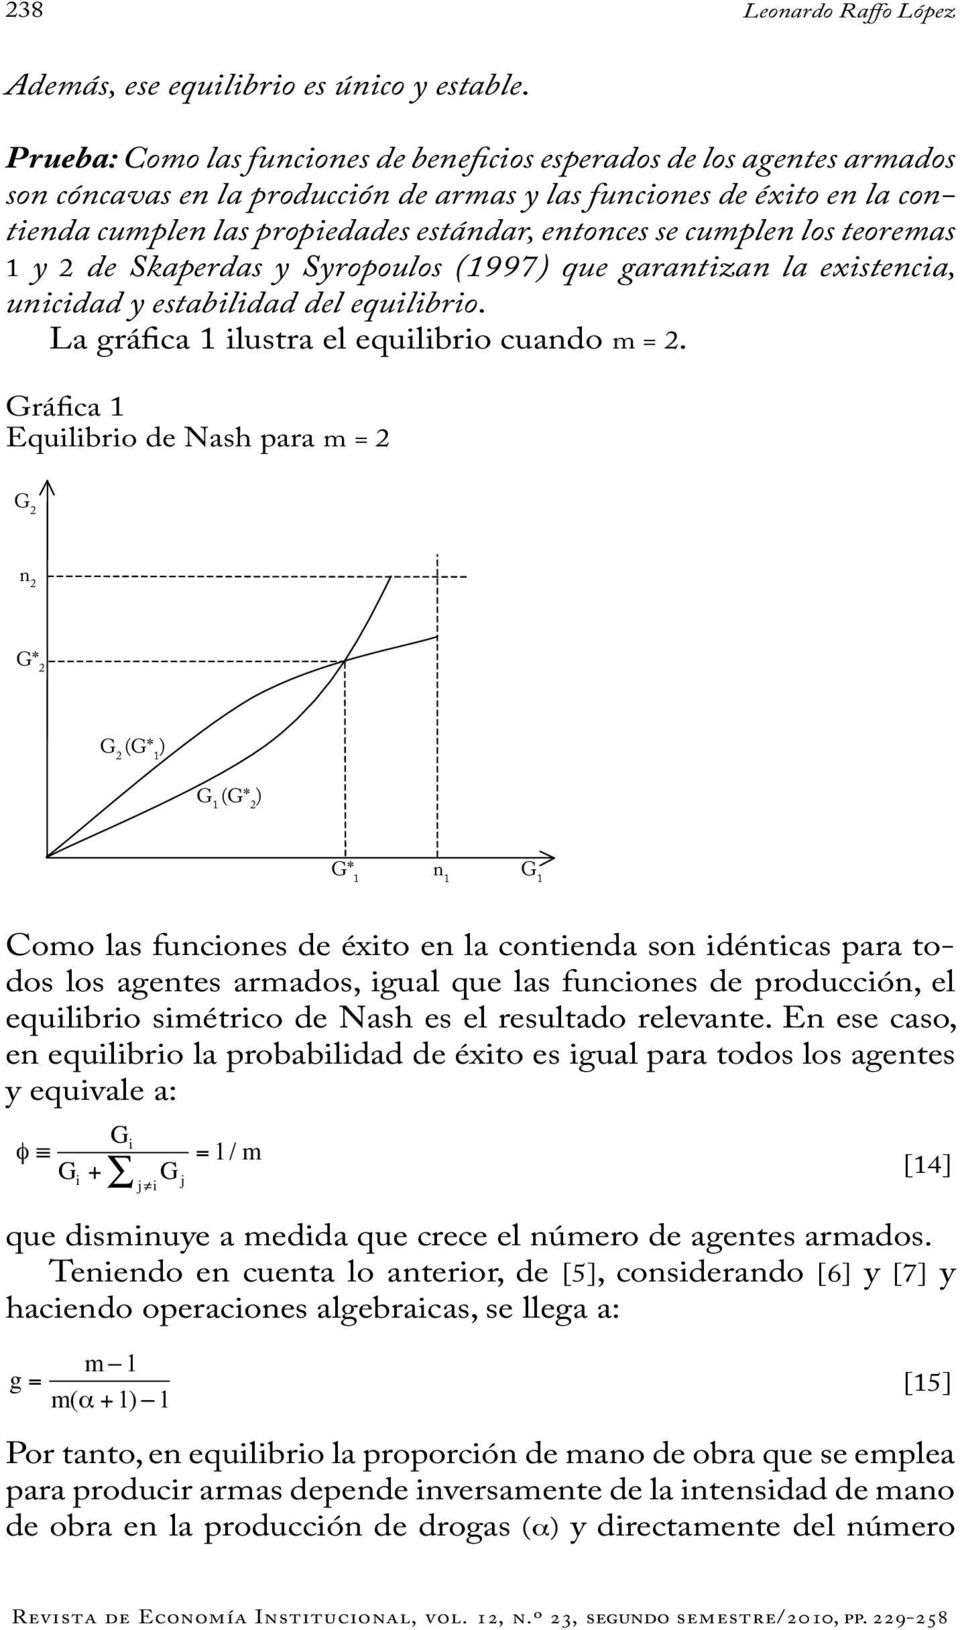 teoremas y 2 de Skaerdas y Syrooulos (997 que garantzan la exstenca, uncdad y establdad del equlbro. La gráfca lustra el equlbro cuando m 2.